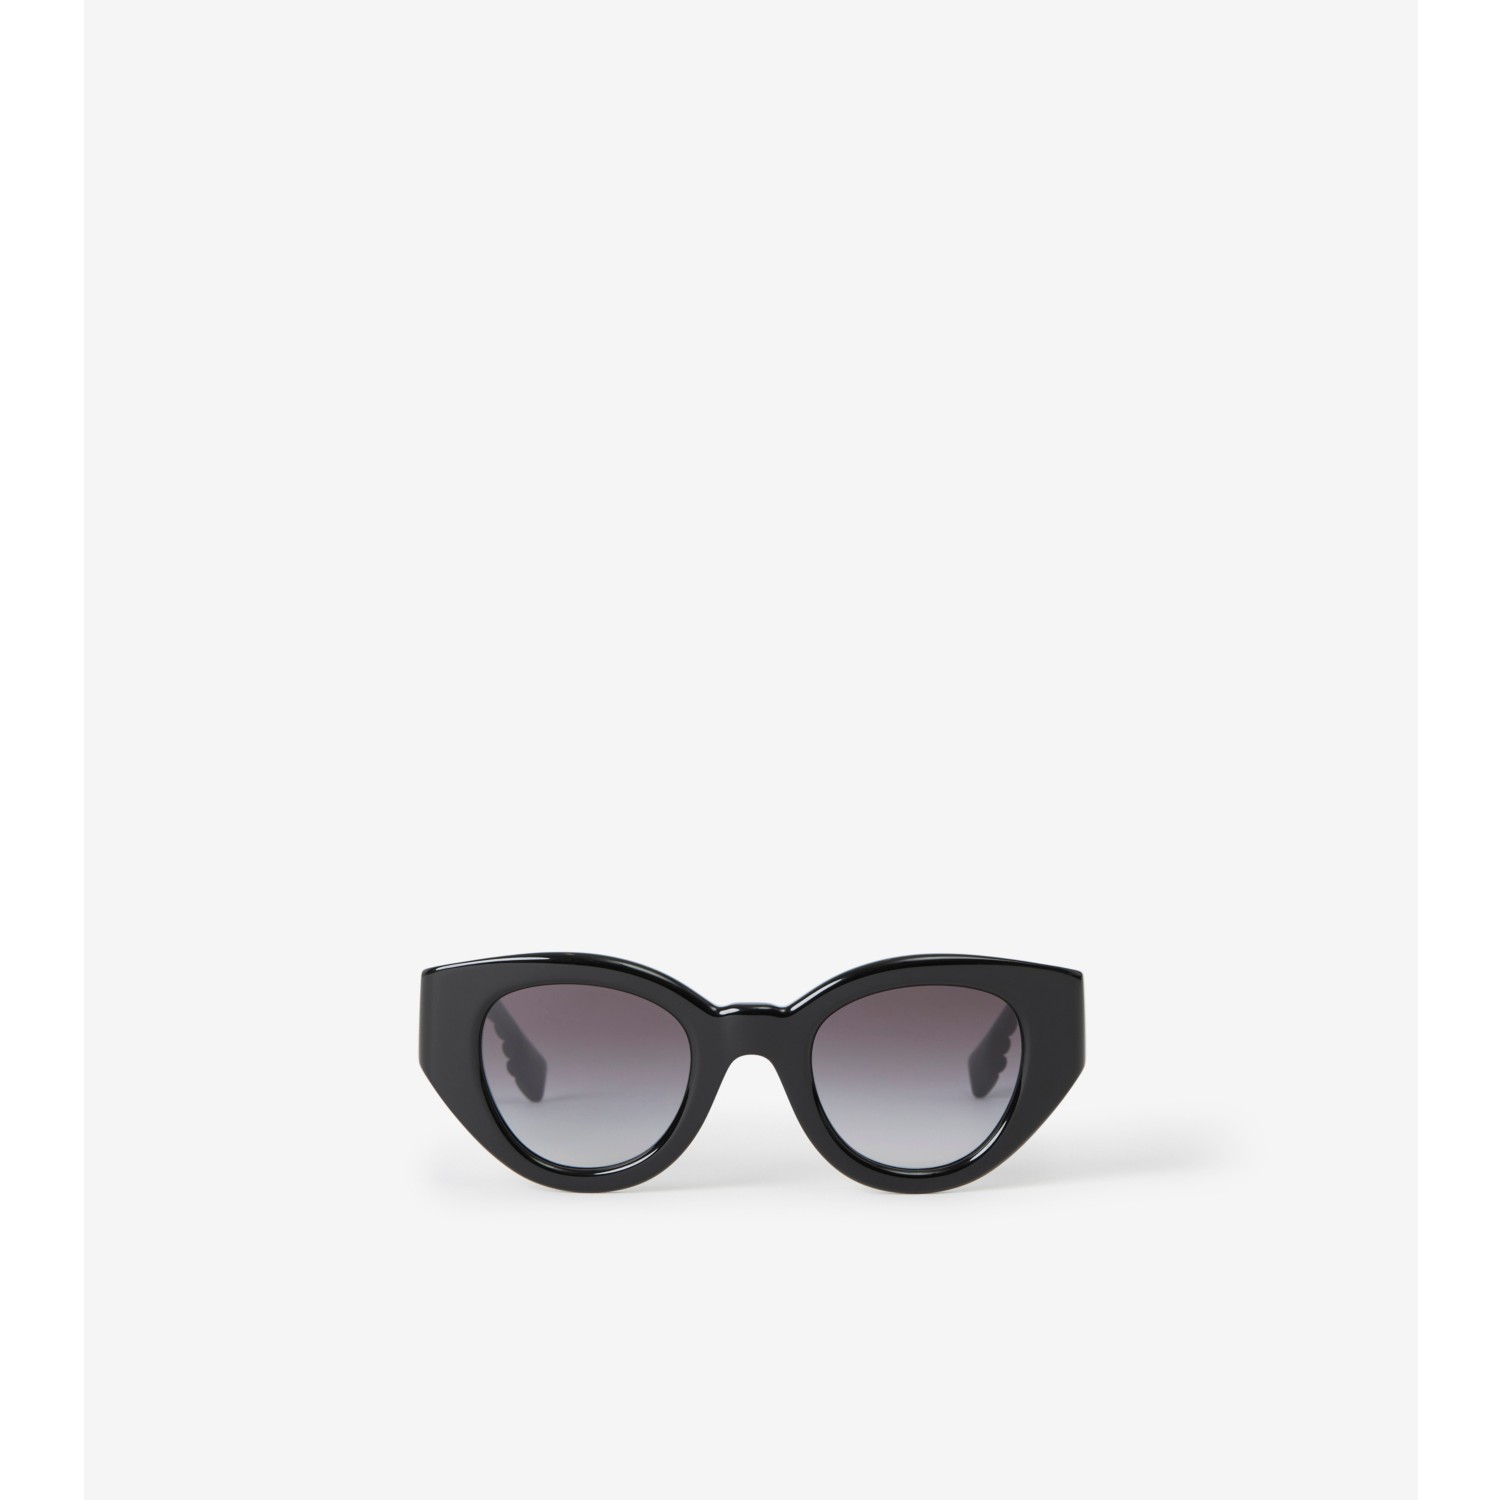 cat eye sunglasses price